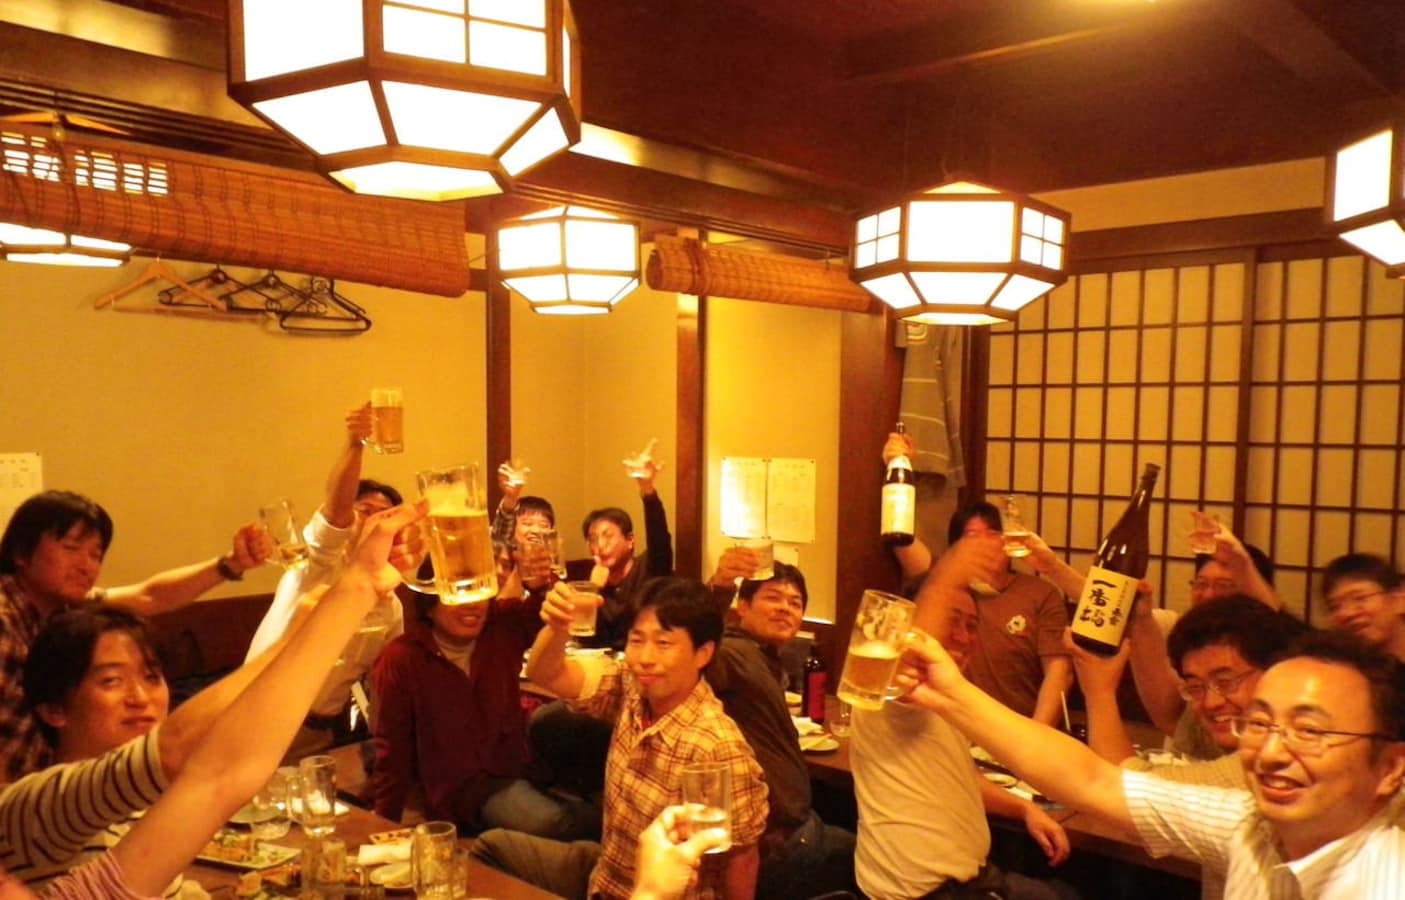 居酒屋里的文化与礼仪4讲 All About Japan